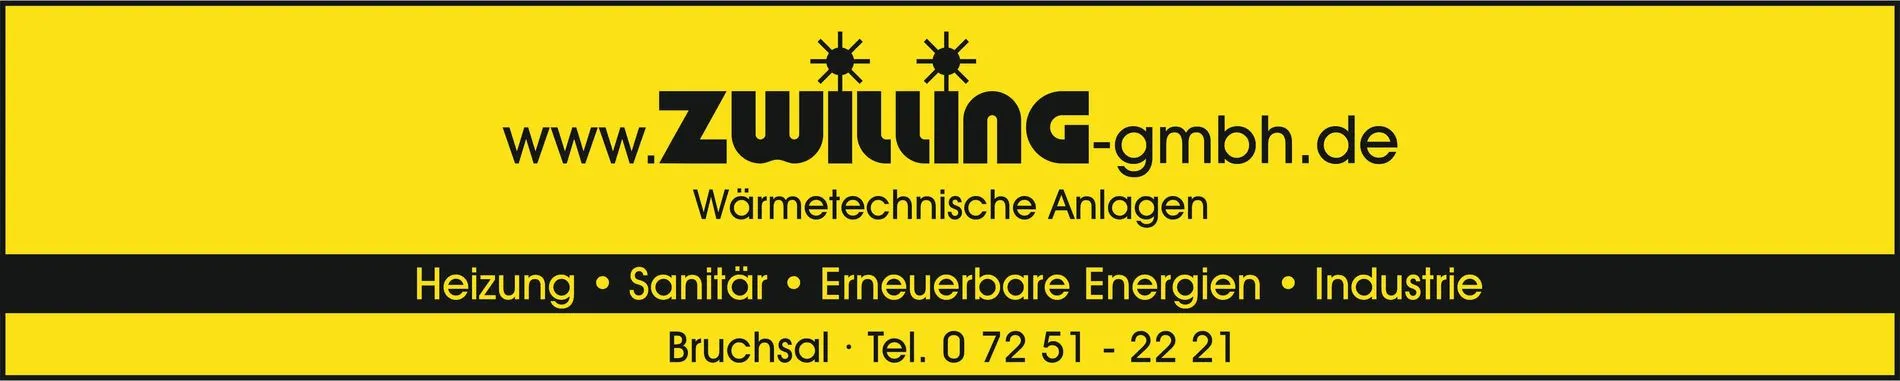 Druck_Zwilling WÃ¤rmetechnische Anlagen Anzeige 350 mm x 70 mm.jpg